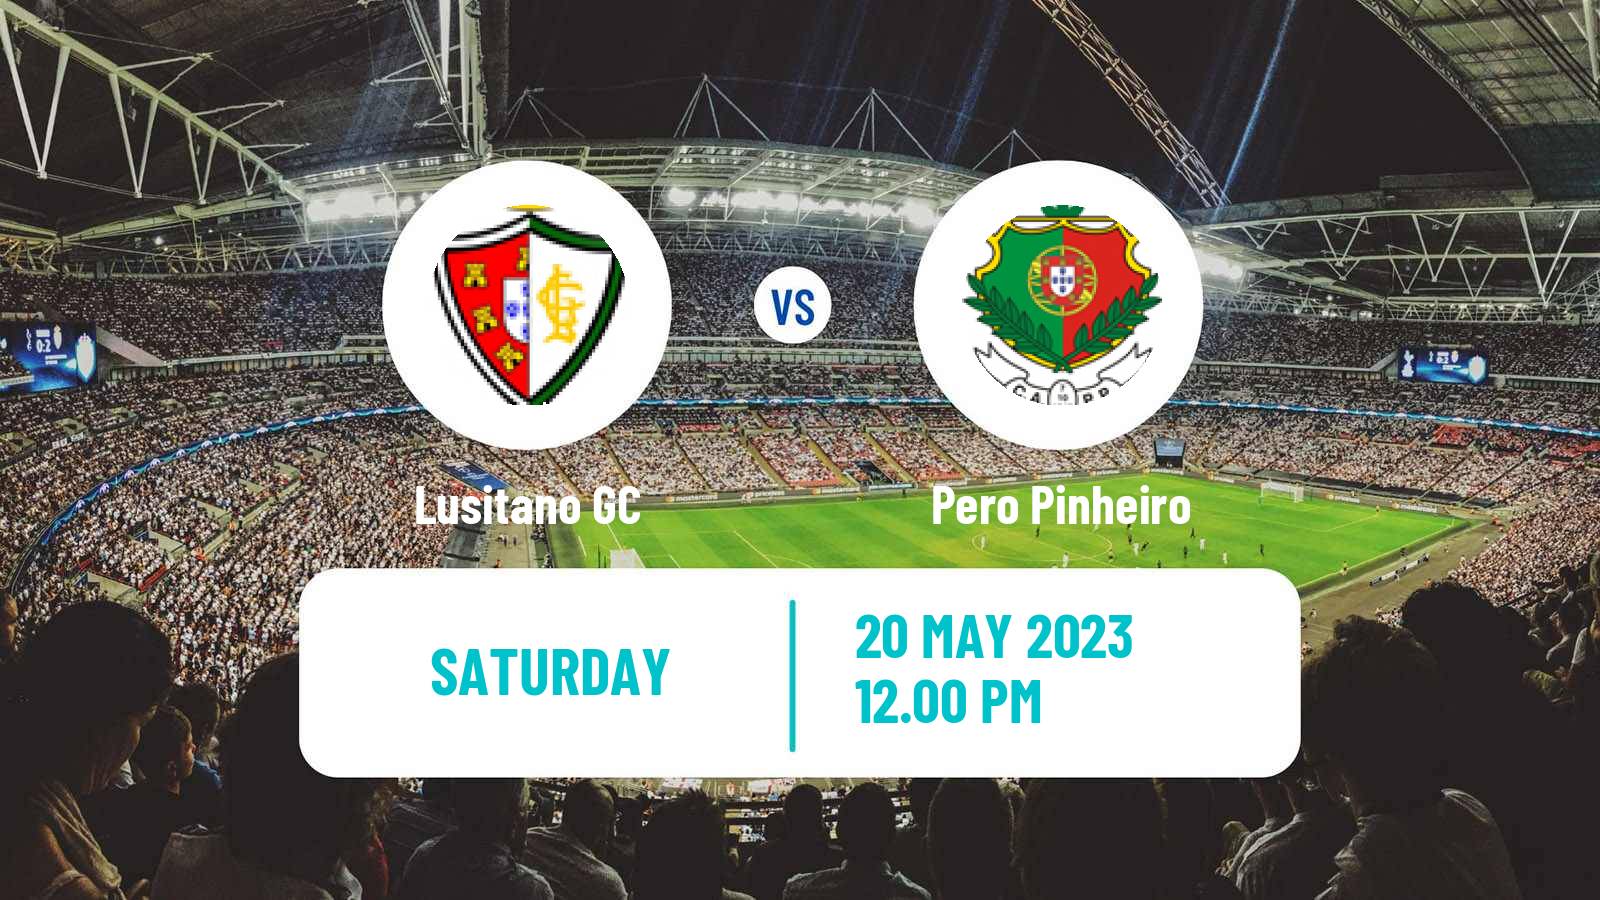 Soccer Campeonato de Portugal - Group A  Lusitano GC - Pero Pinheiro